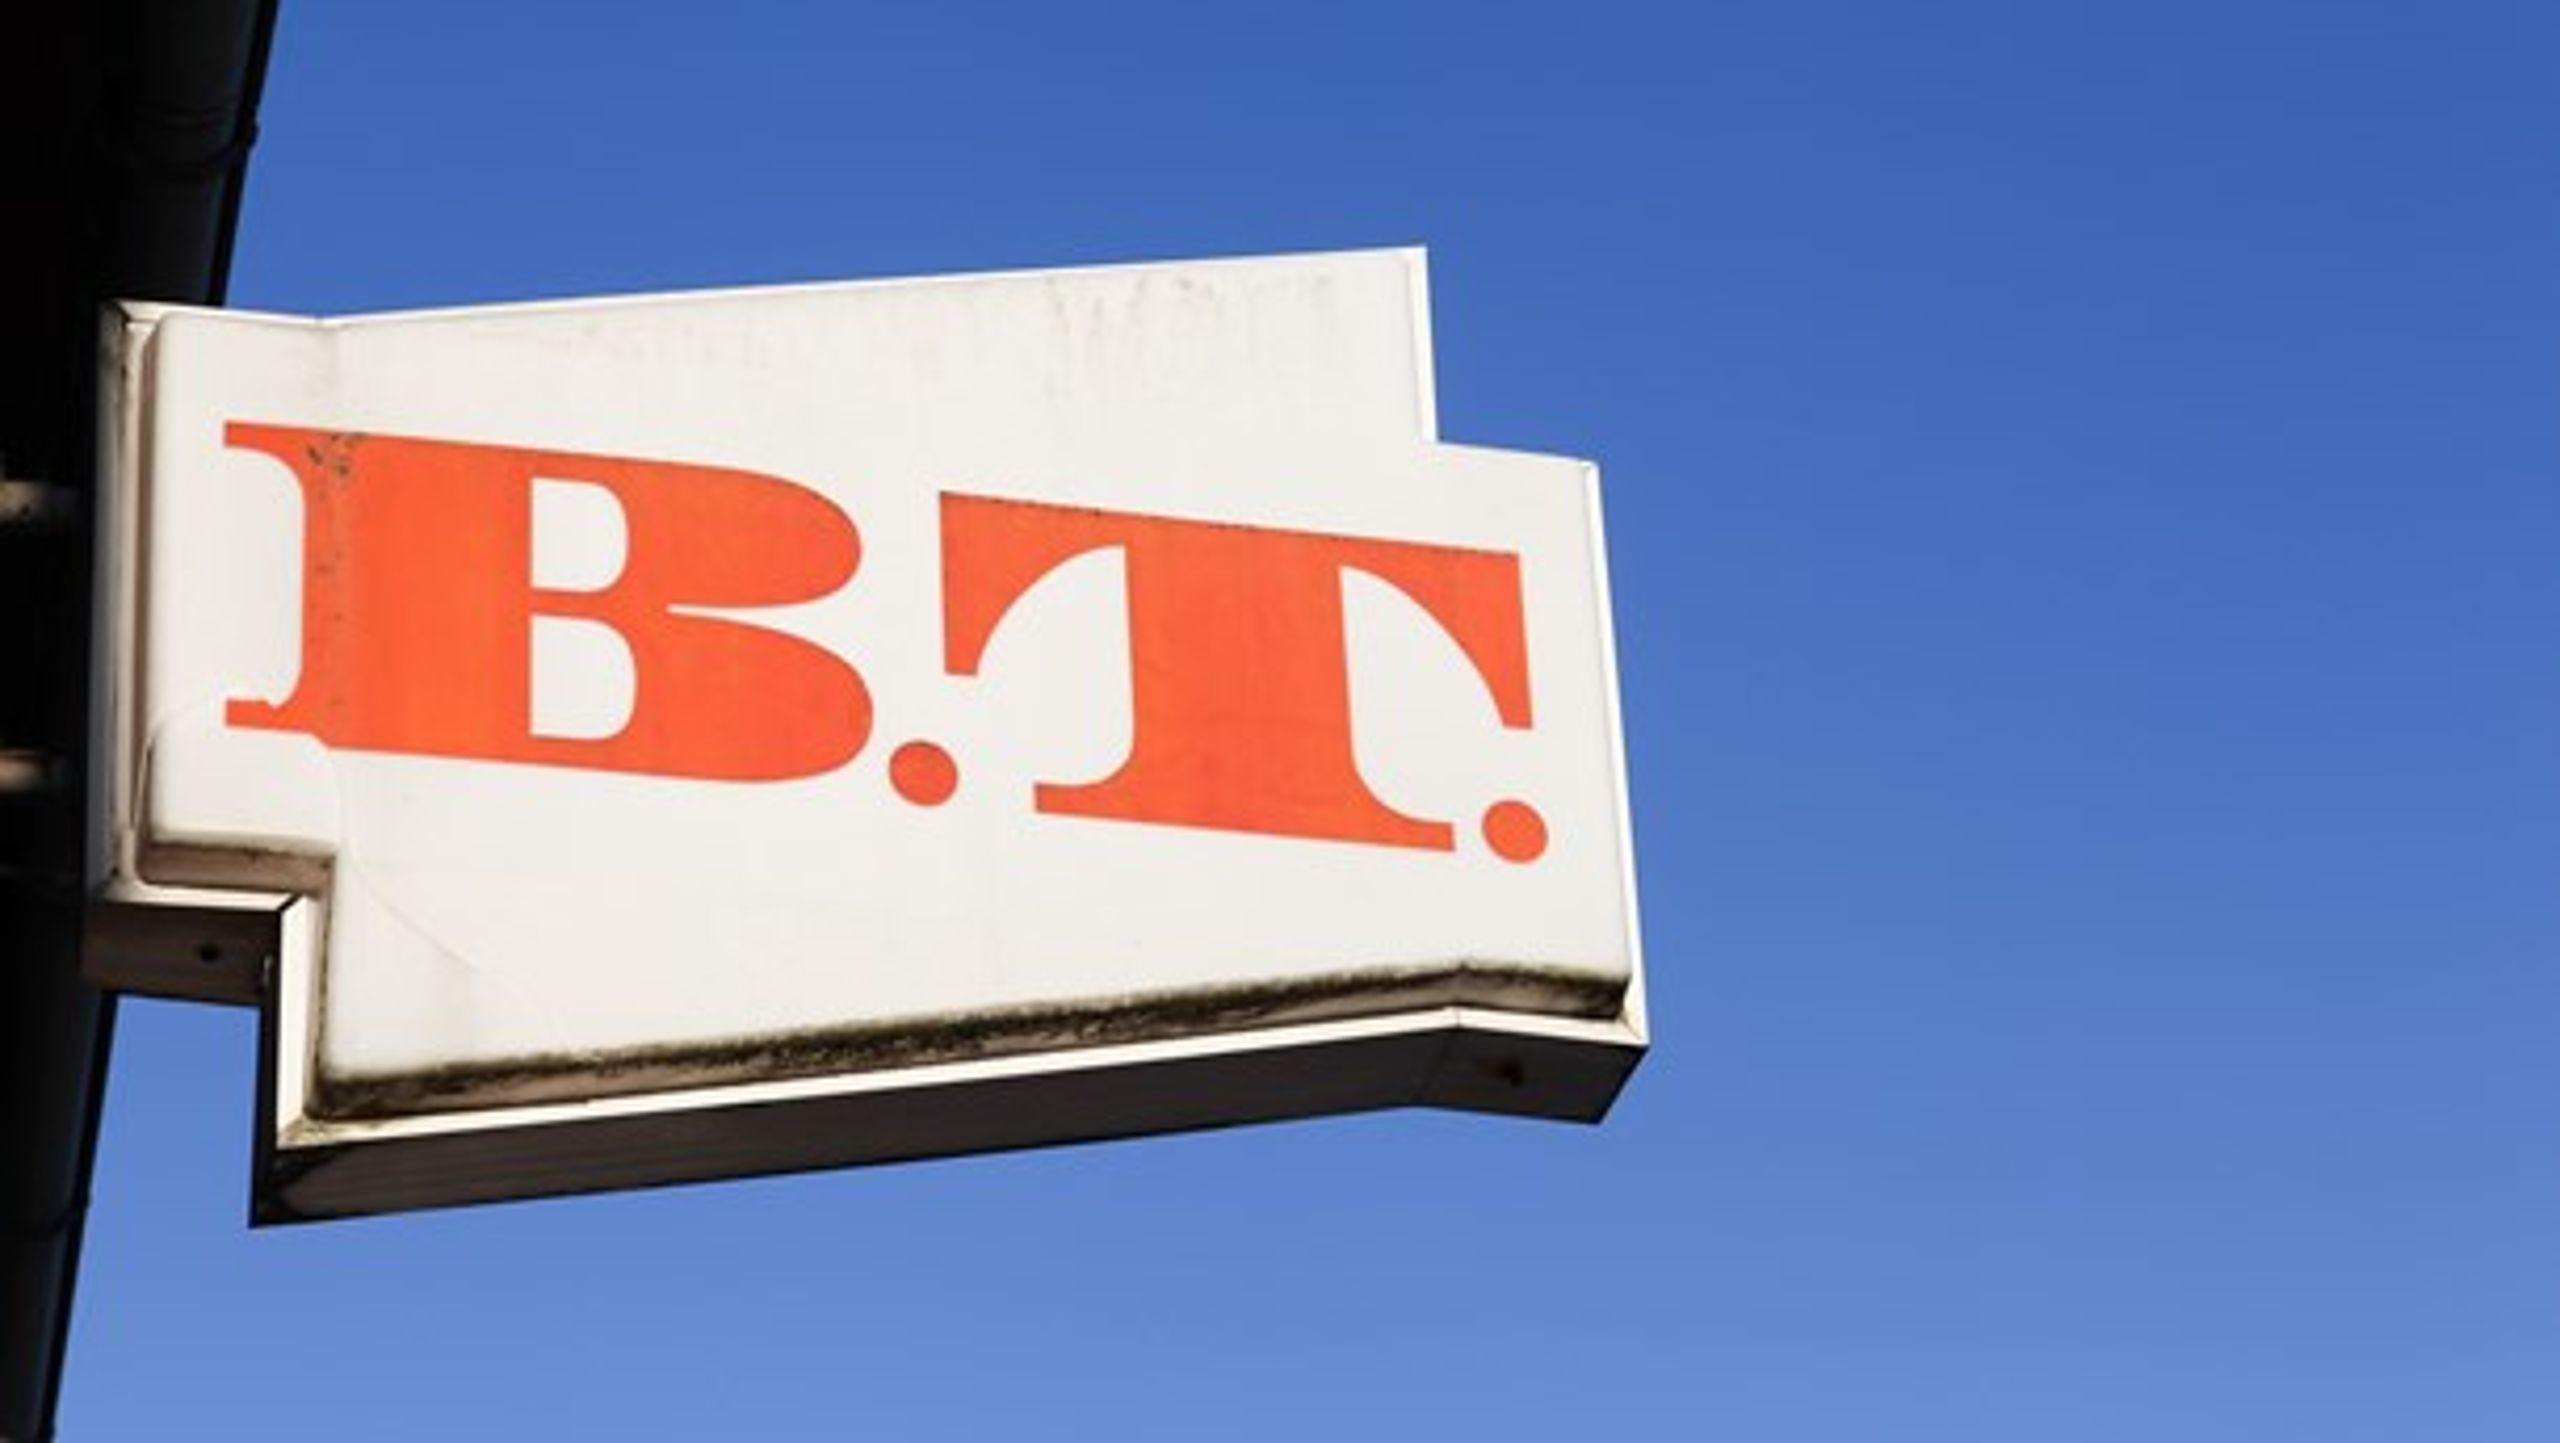 B.T. og Metroxpress blev sidste år samlet under B.T.-brandet.